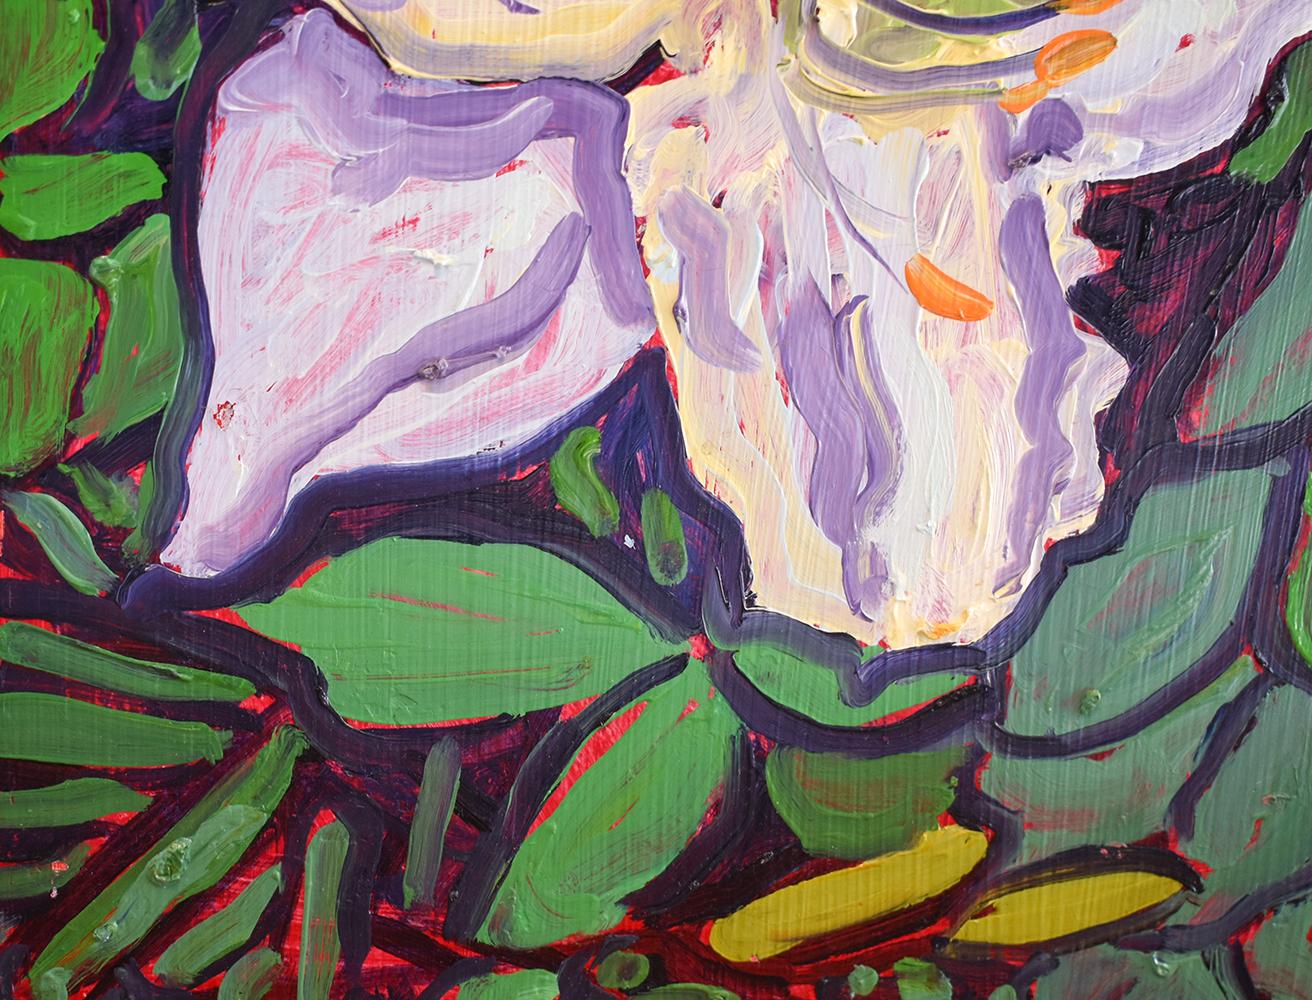 Grande nénuphar blanche (peinture de nature morte abstraite de fleur blanche de style fauviste) - Contemporain Painting par Dan Rupe